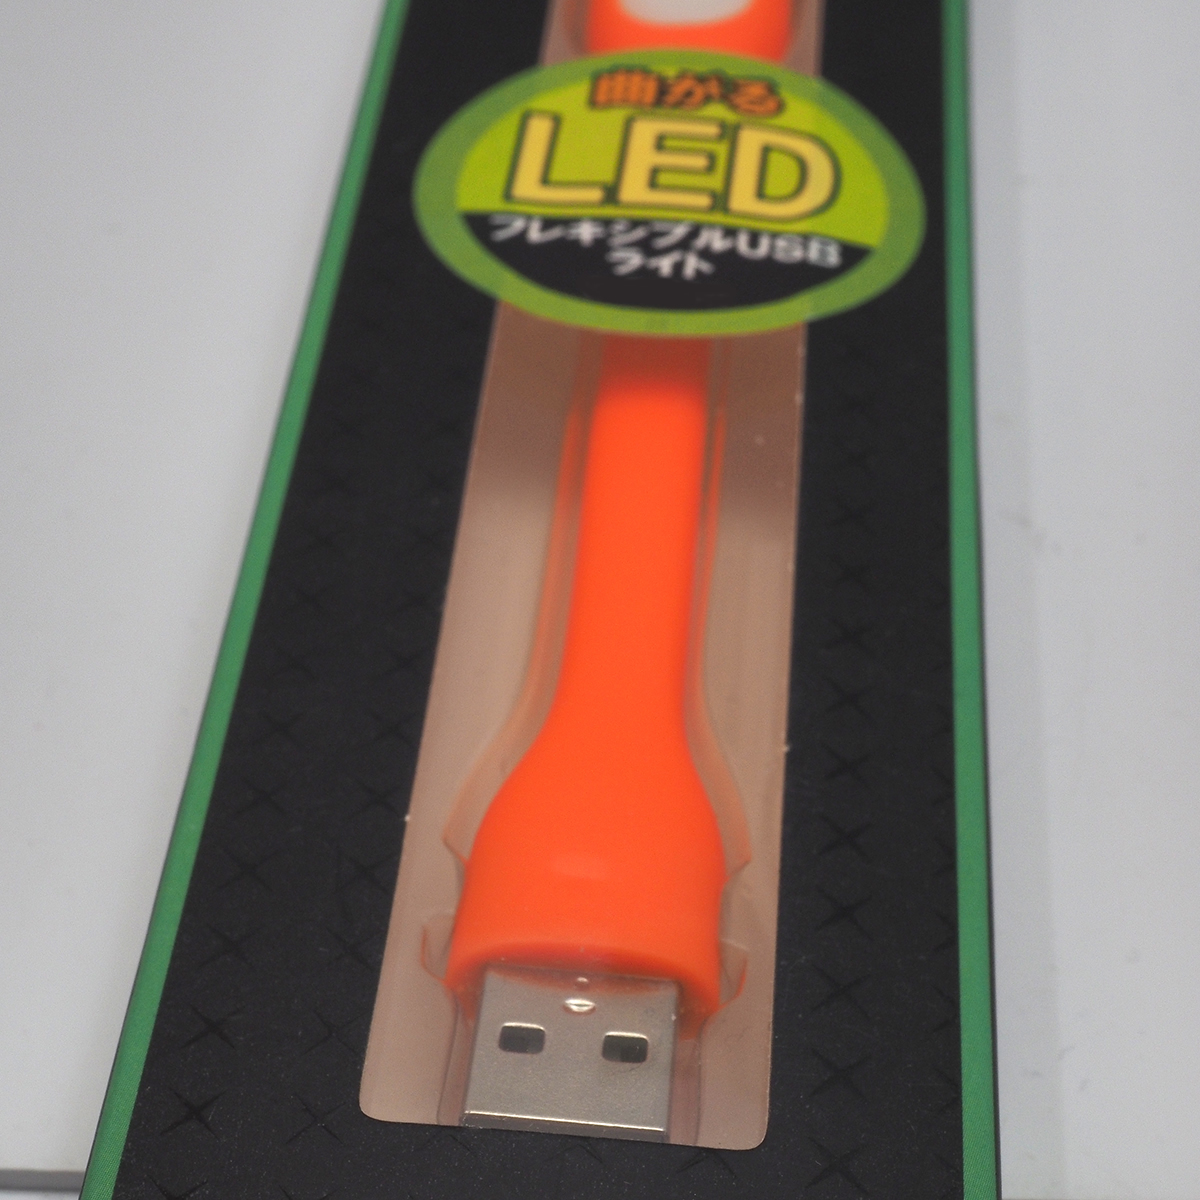  поворачивает миниатюрный легкий LED свет гибкий USB свет LXS-001 orange USB порт . есть персональный компьютер & мобильный аккумулятор соответствует нераспечатанный товар 